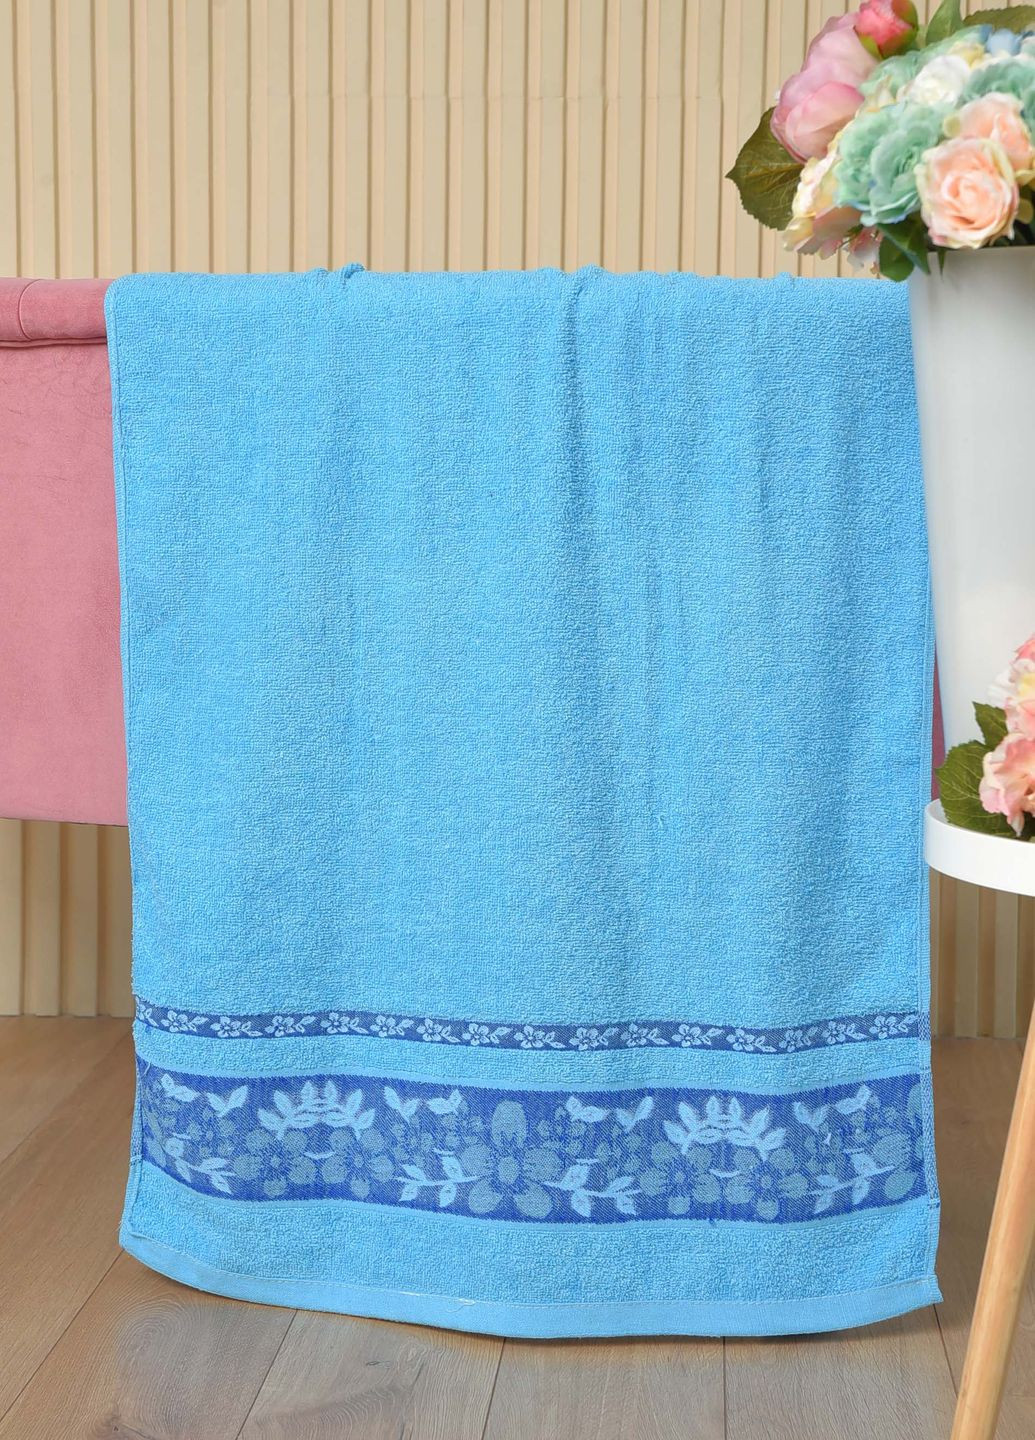 Let's Shop полотенце банное махровое голубого цвета однотонный голубой производство - Турция